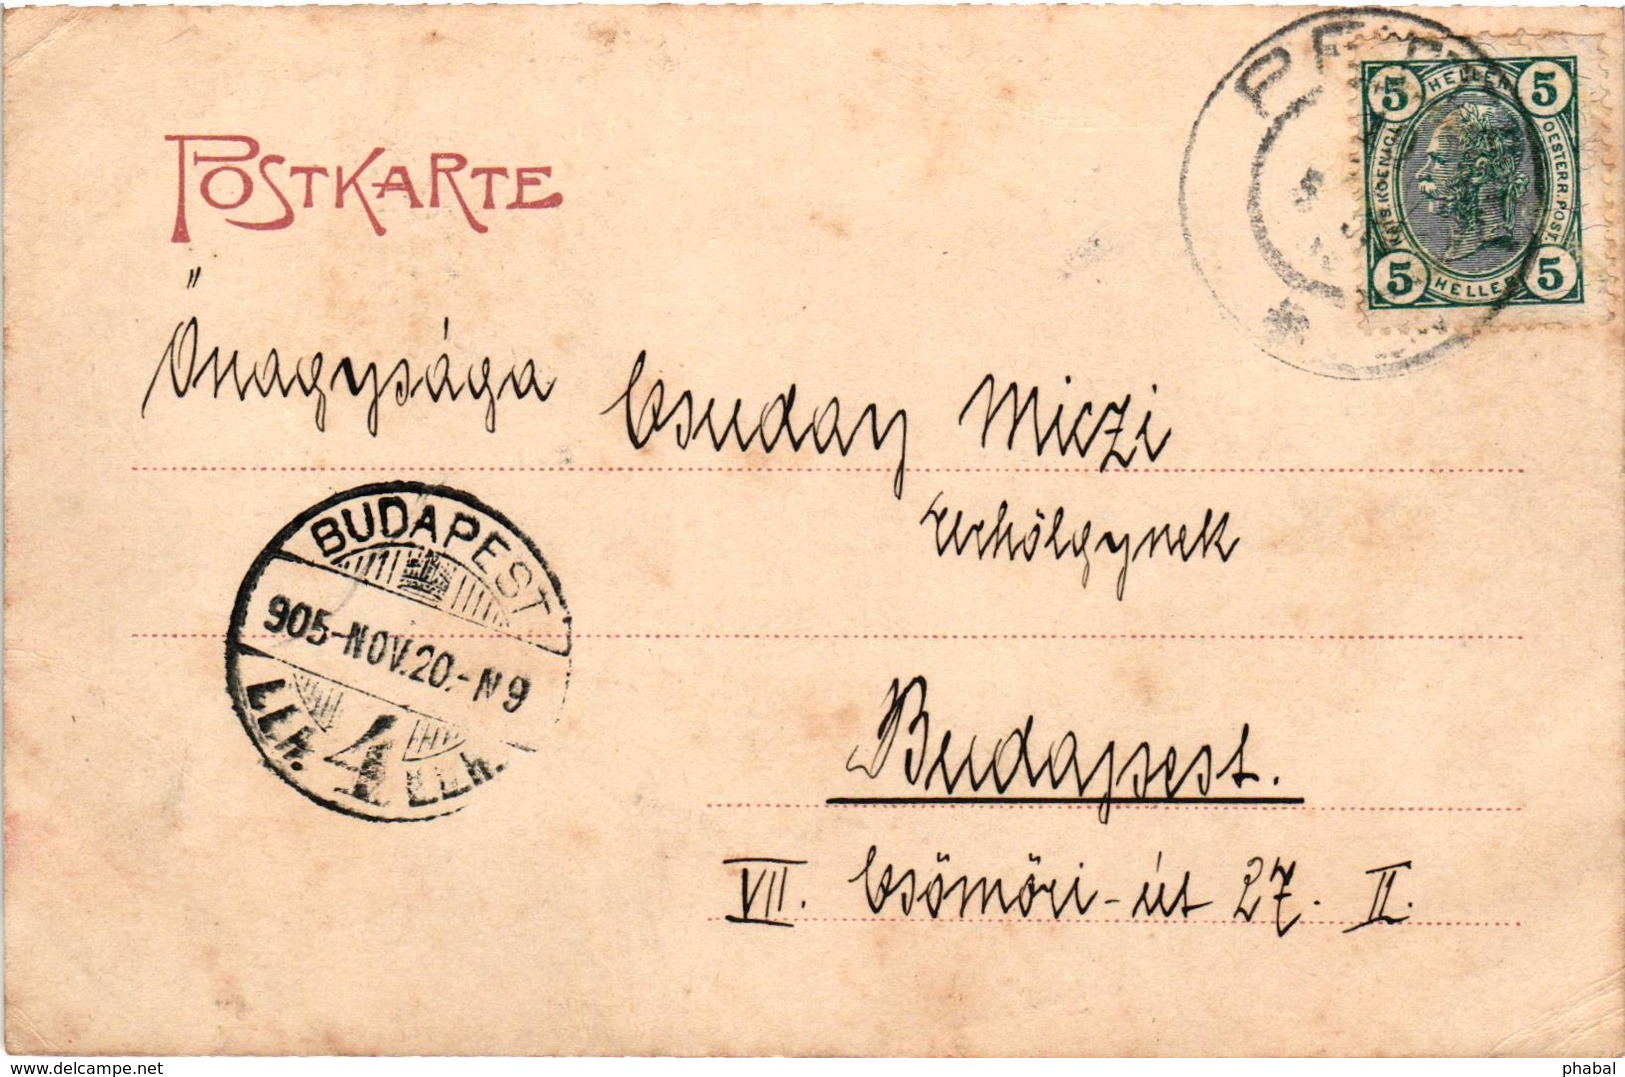 Slovenia, Ptuj, Pettau, Town Scene, Old Postcard 1905 - Slovenia